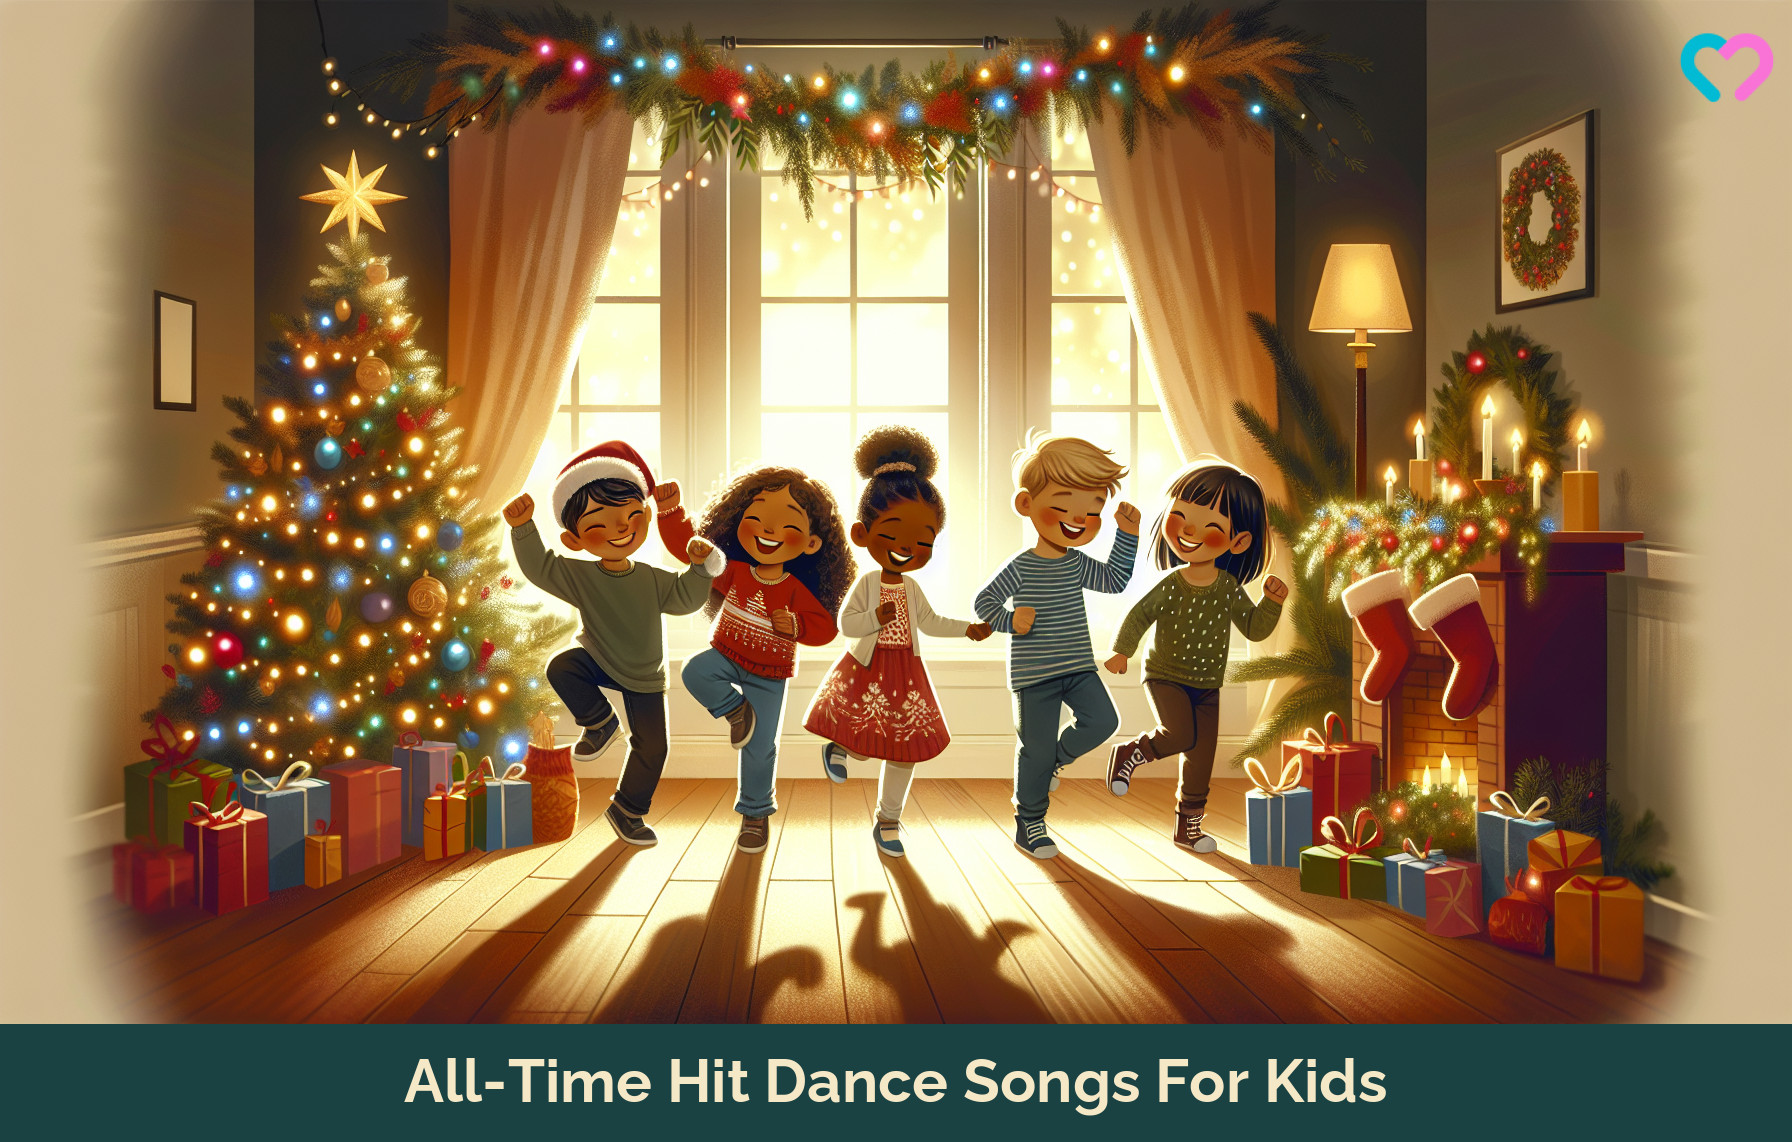 dance songs for kids_illustration